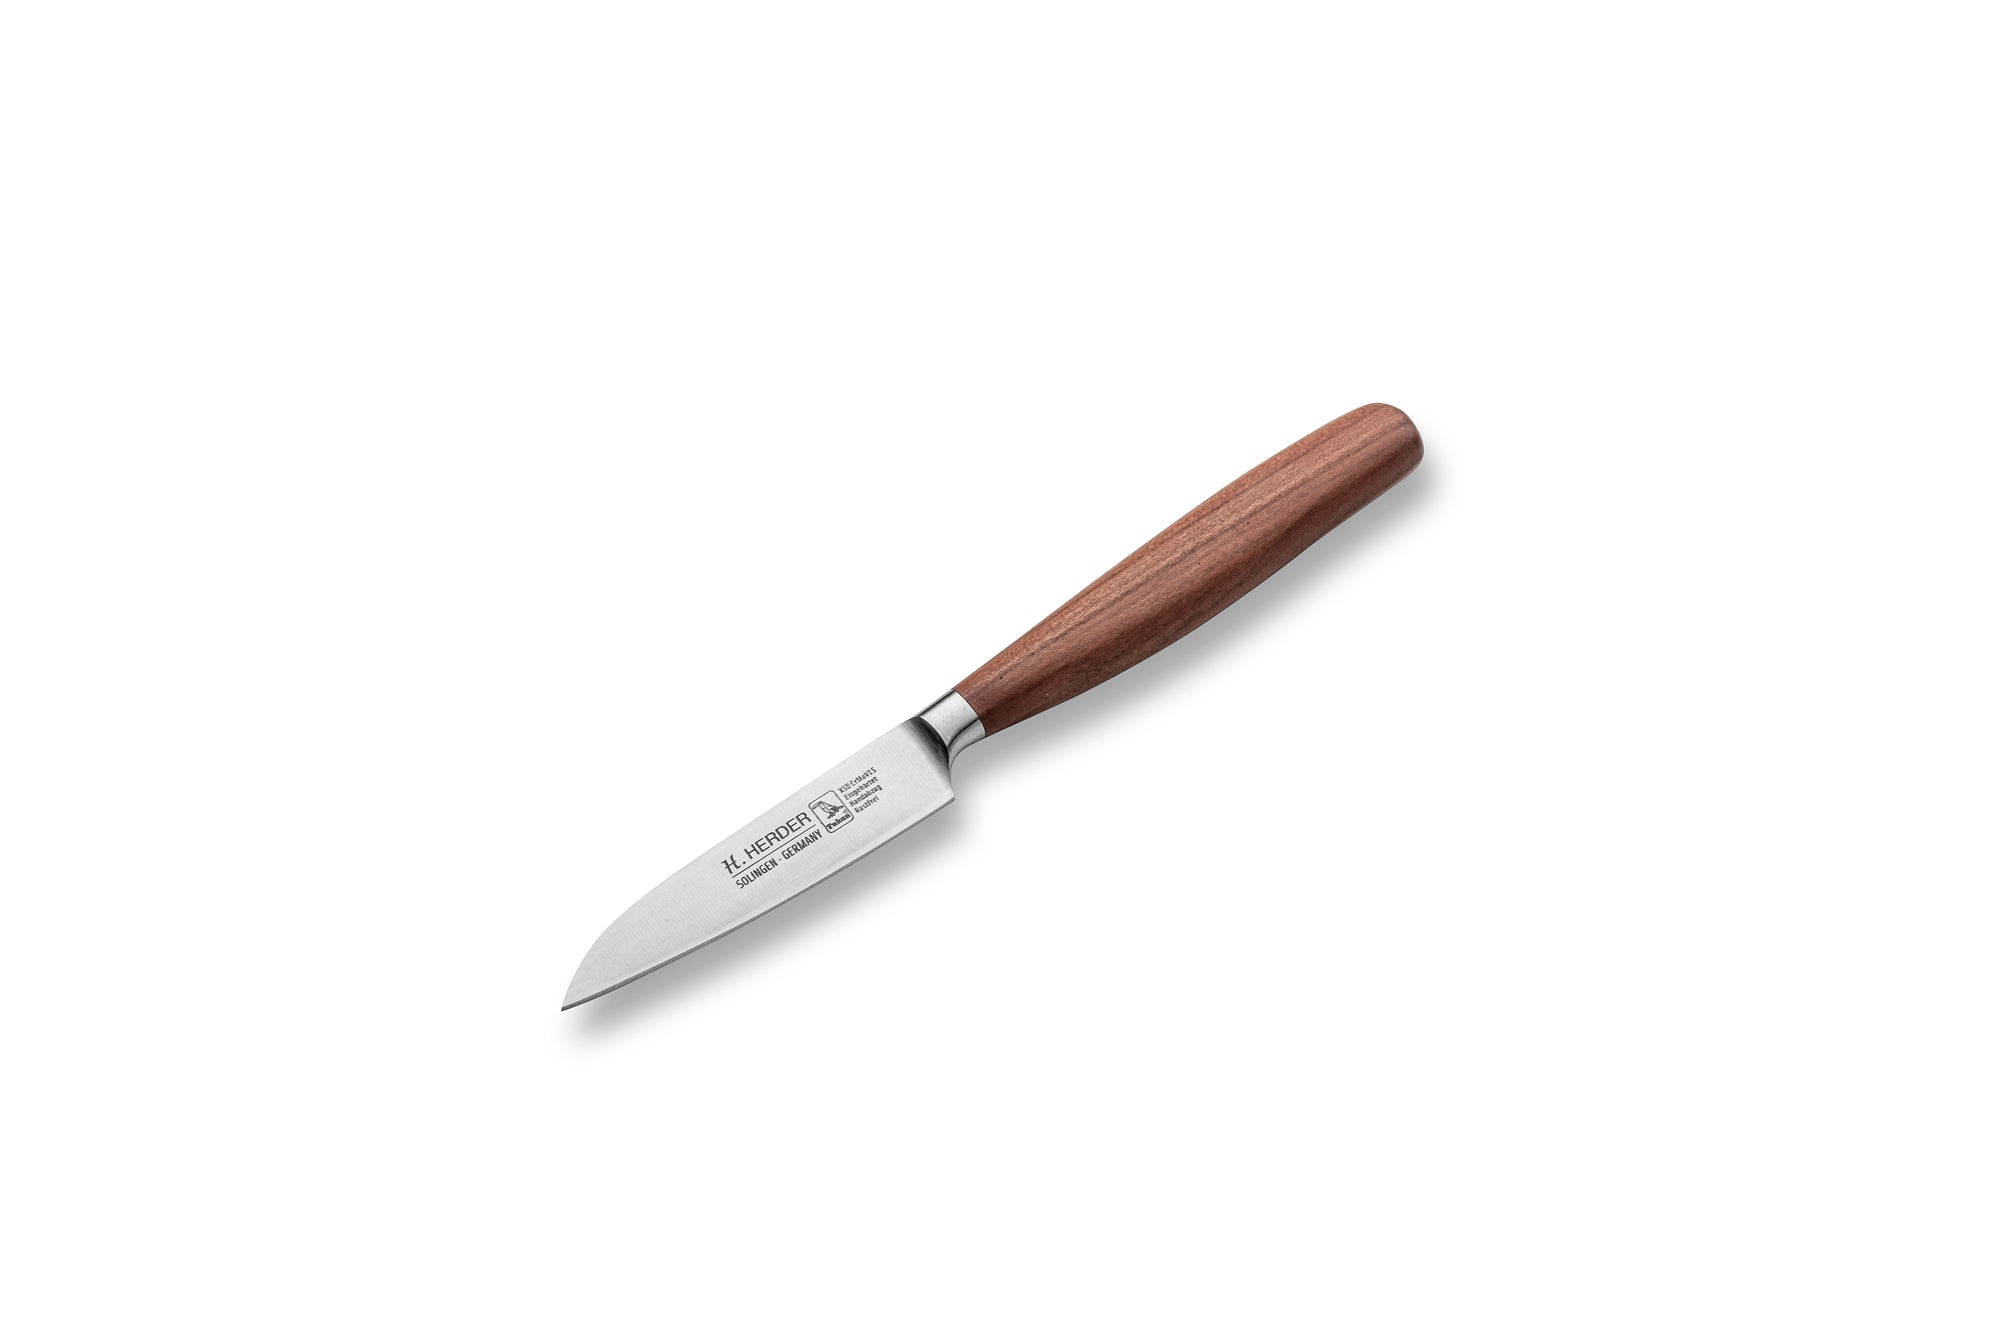 Couteau à légumes Eterno, bois de prunier, longueur de lame 9 cm, forgé